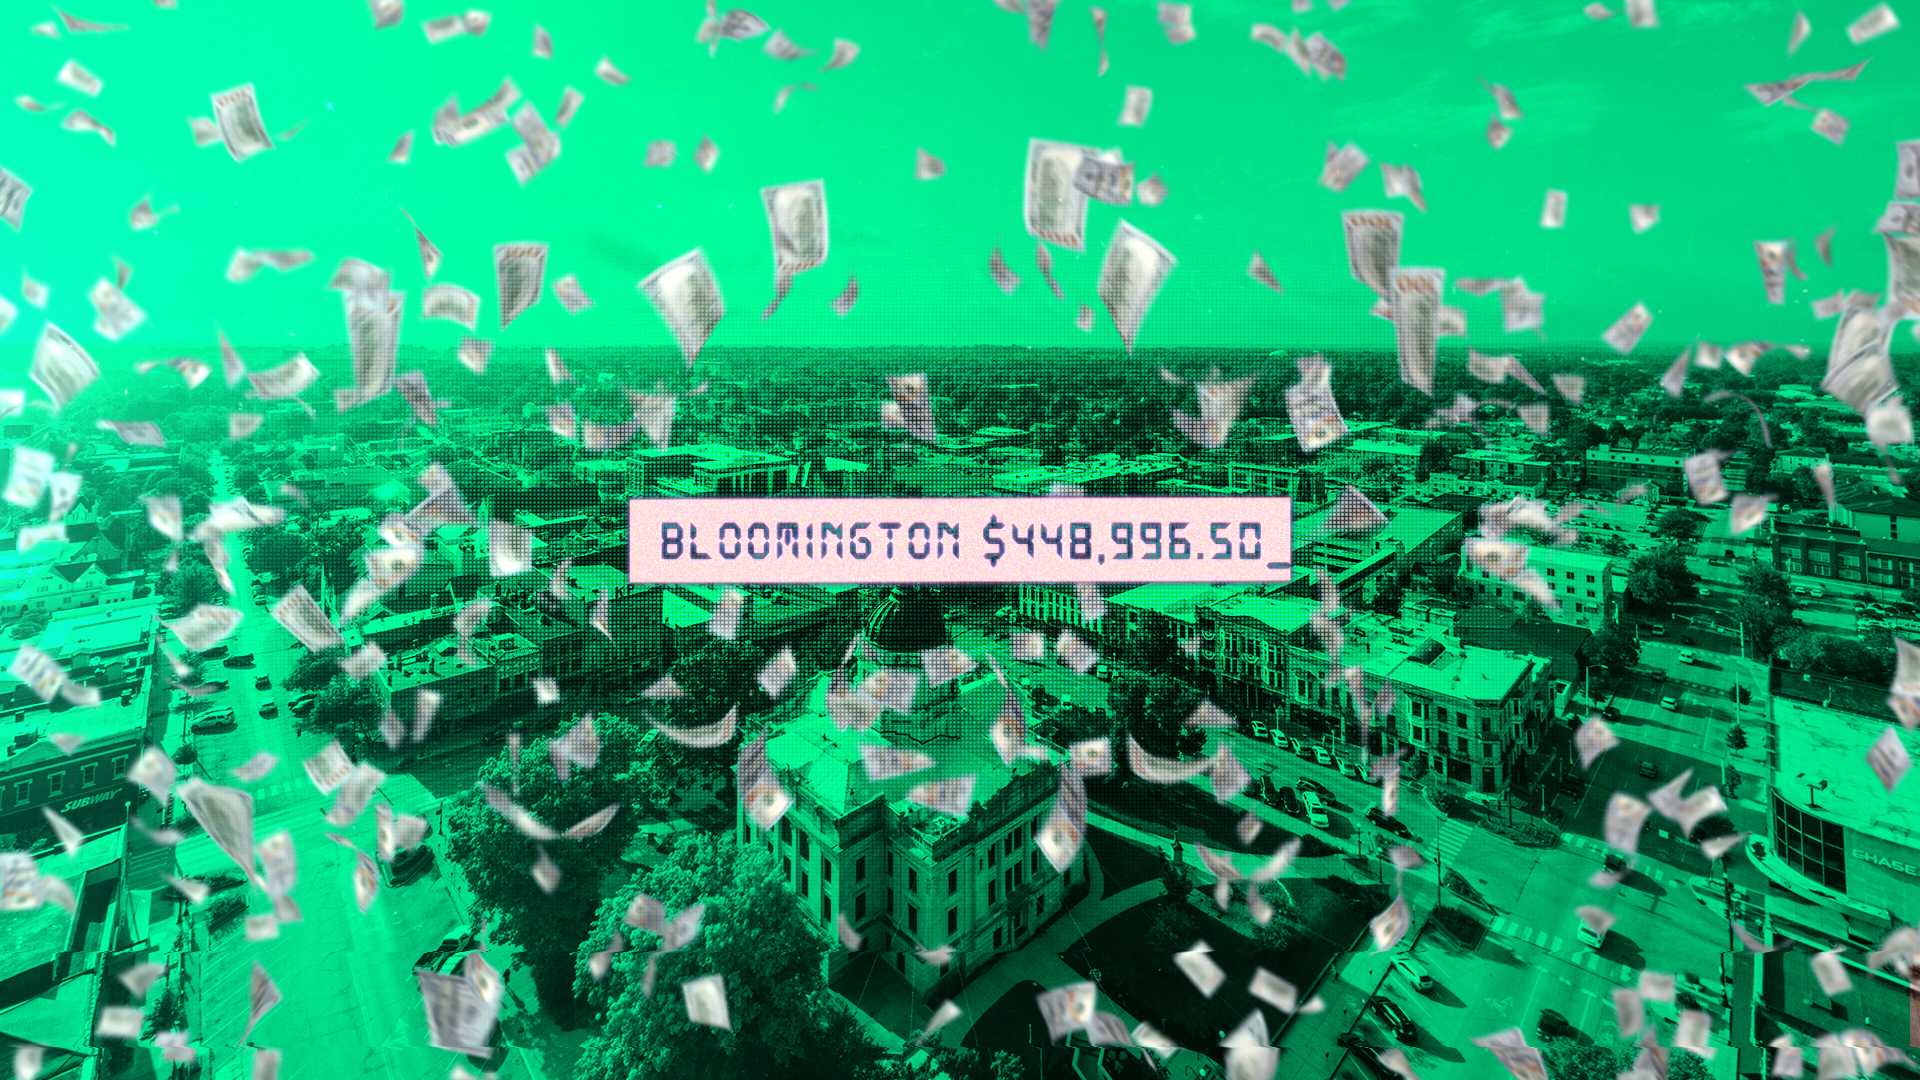 Bloomington debt